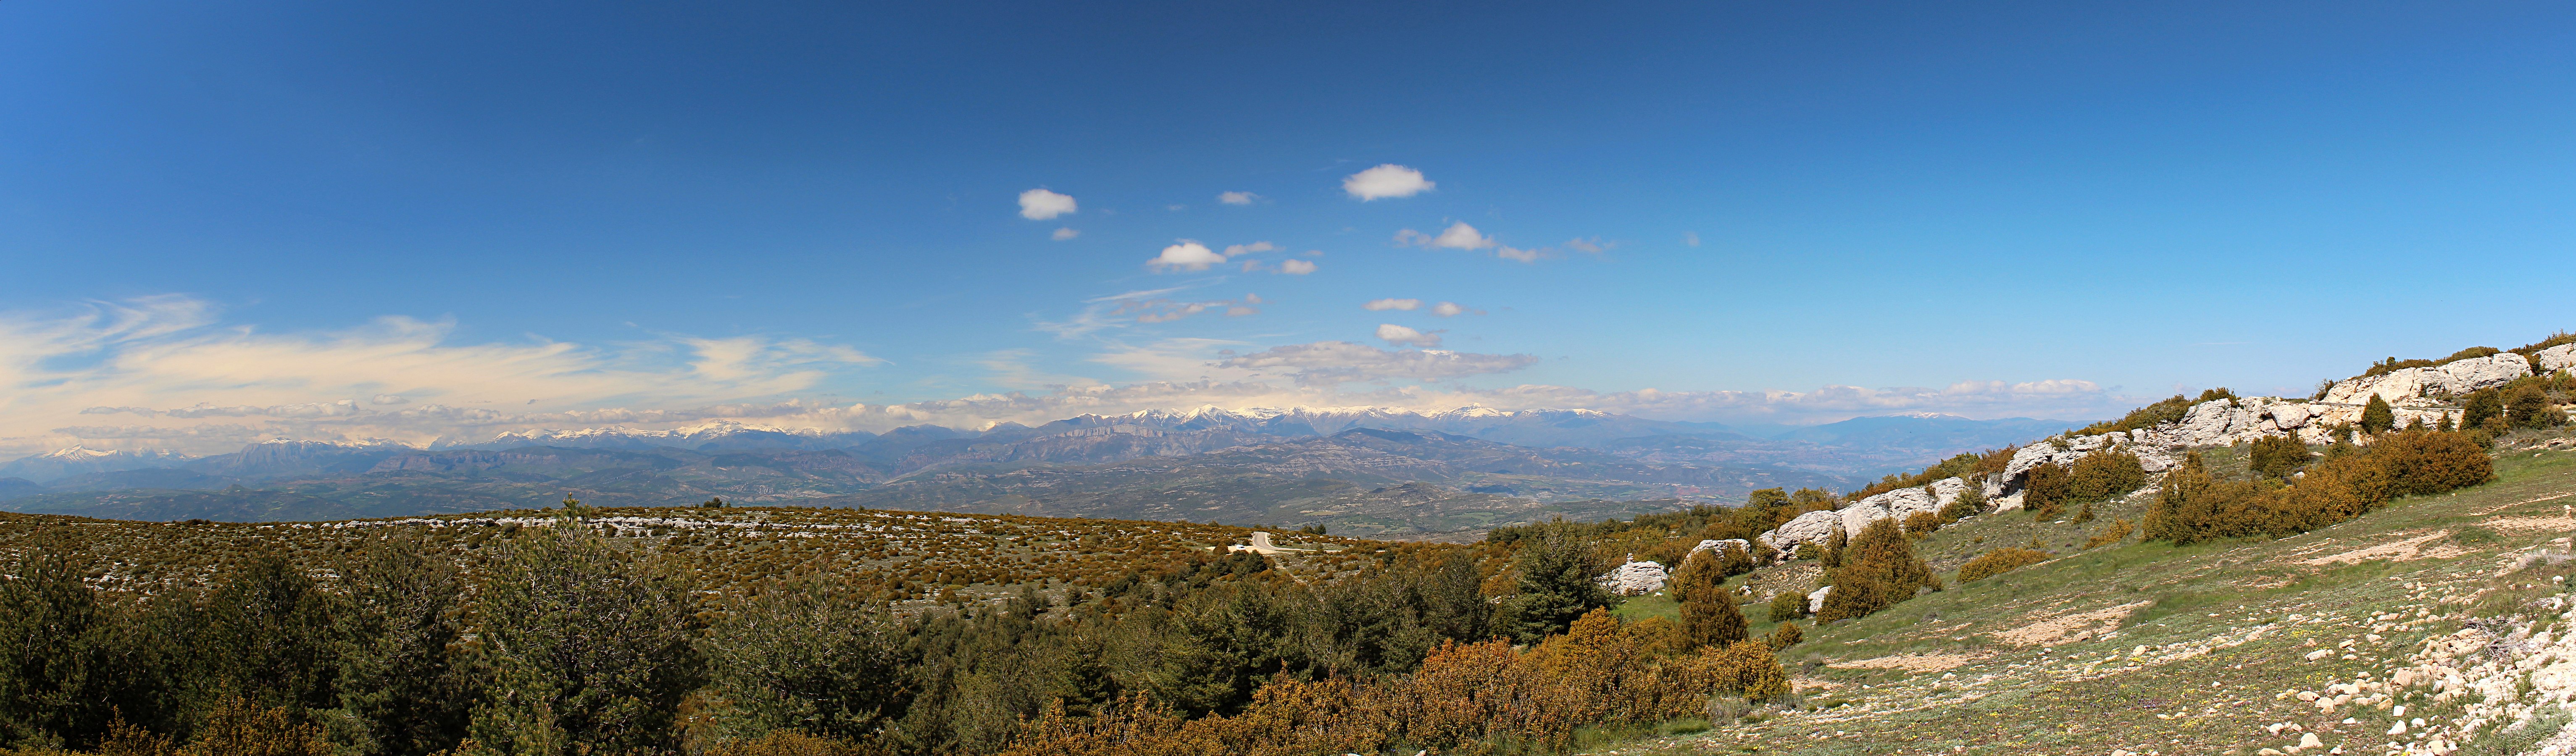 Col of Ares, Serra del Montsec © AlbertTM